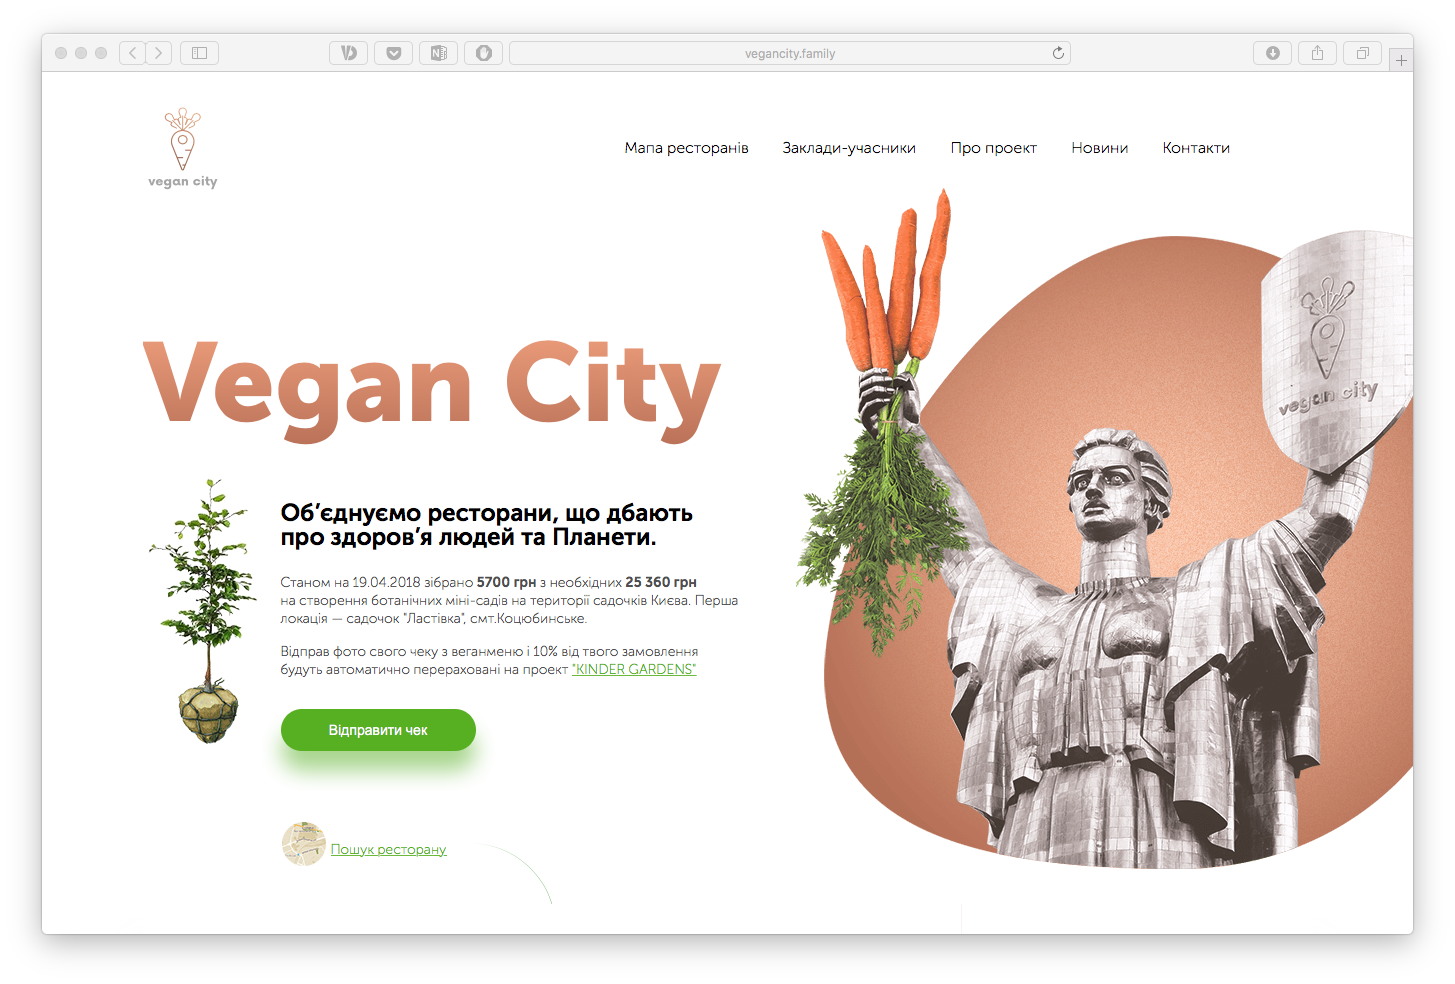 V Kyjevi stvoryly onlajn-mapu veganśkyh zakladiv